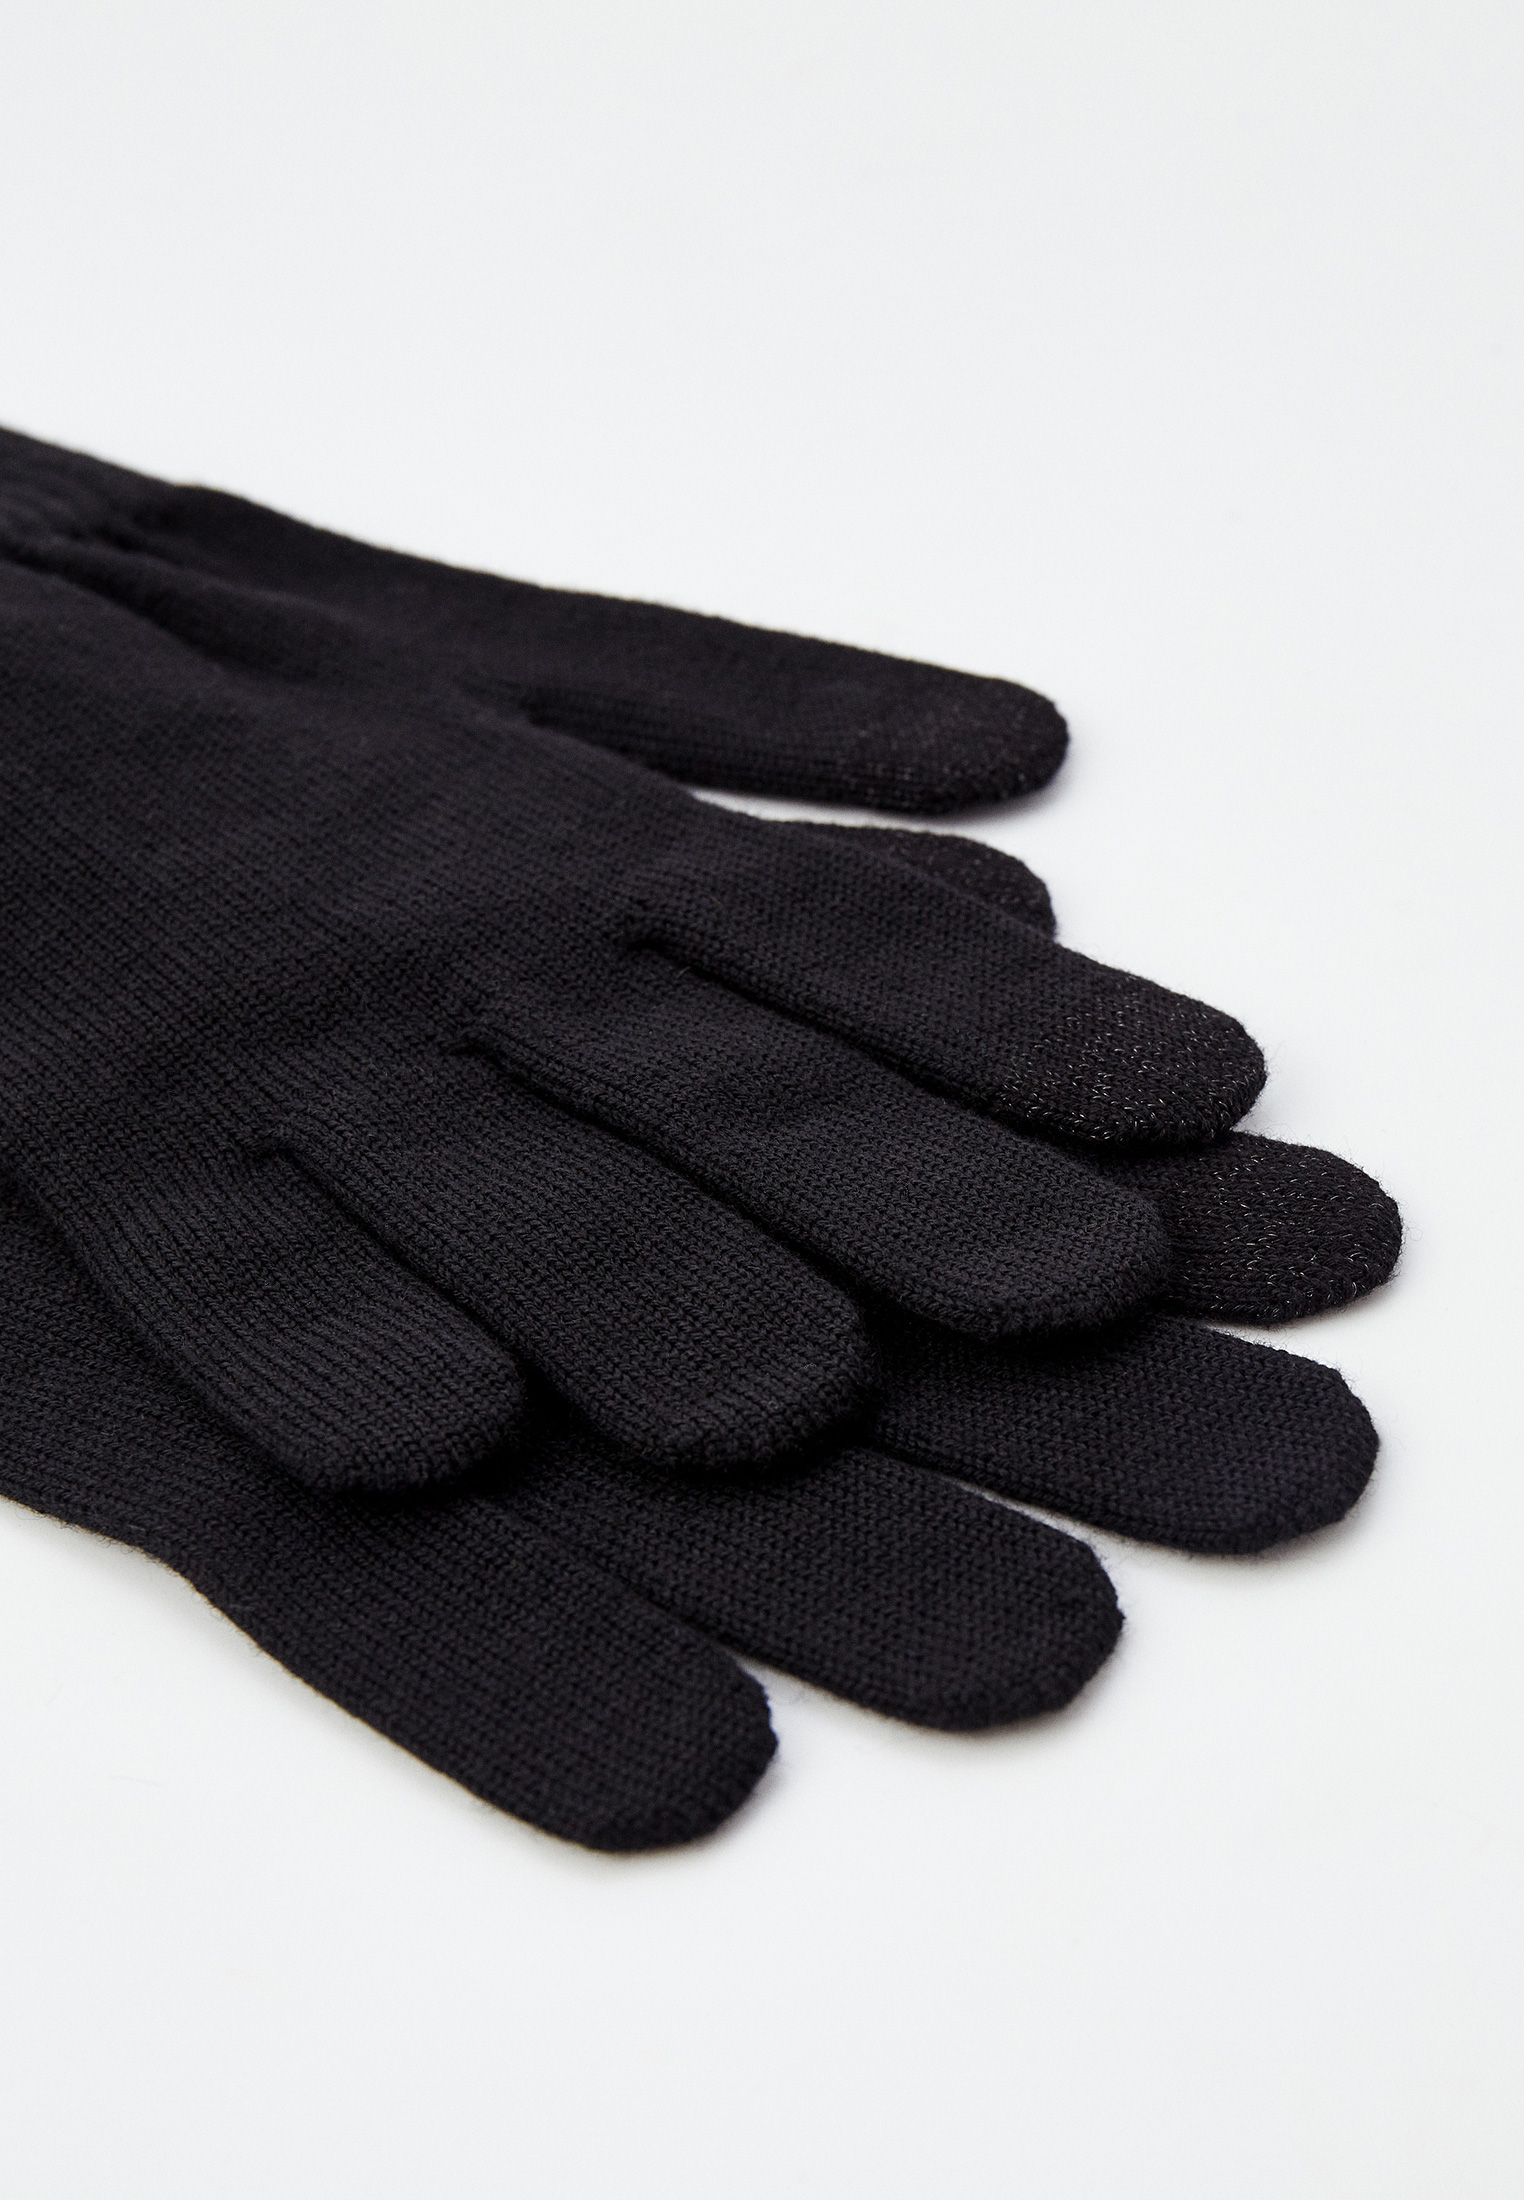 Мужские перчатки Emporio Armani (Эмпорио Армани) 624514 1A252: изображение 2